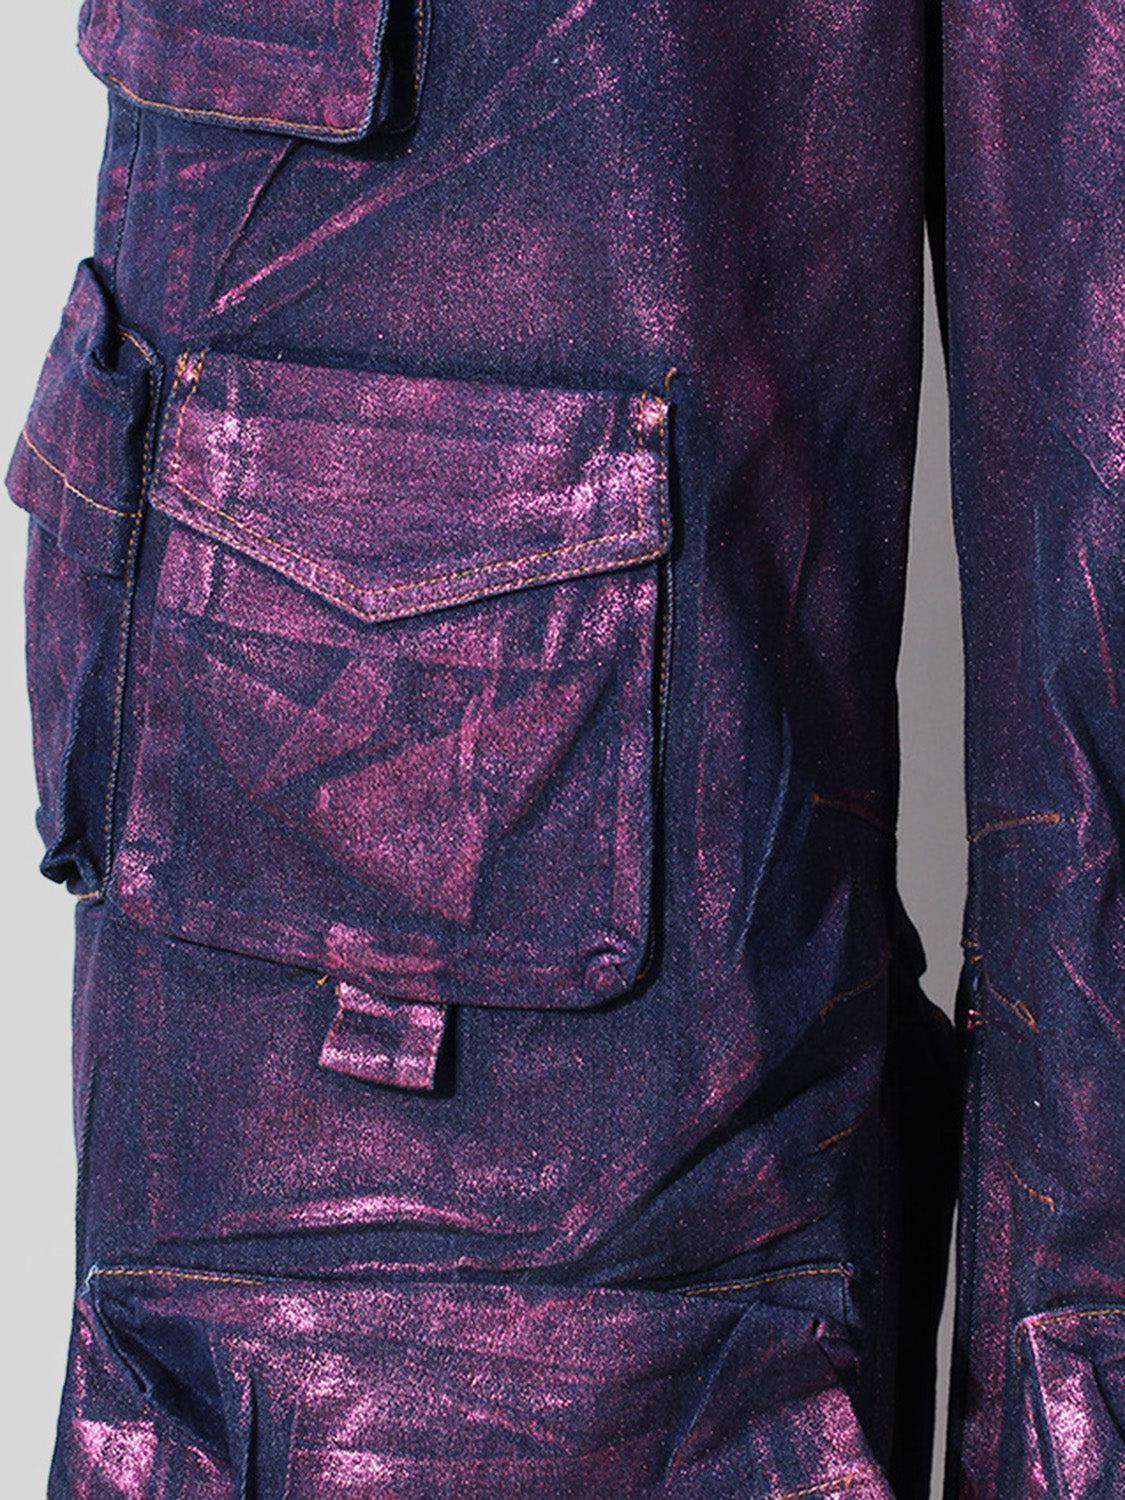 a shiny purple jacket with a pocket on the back